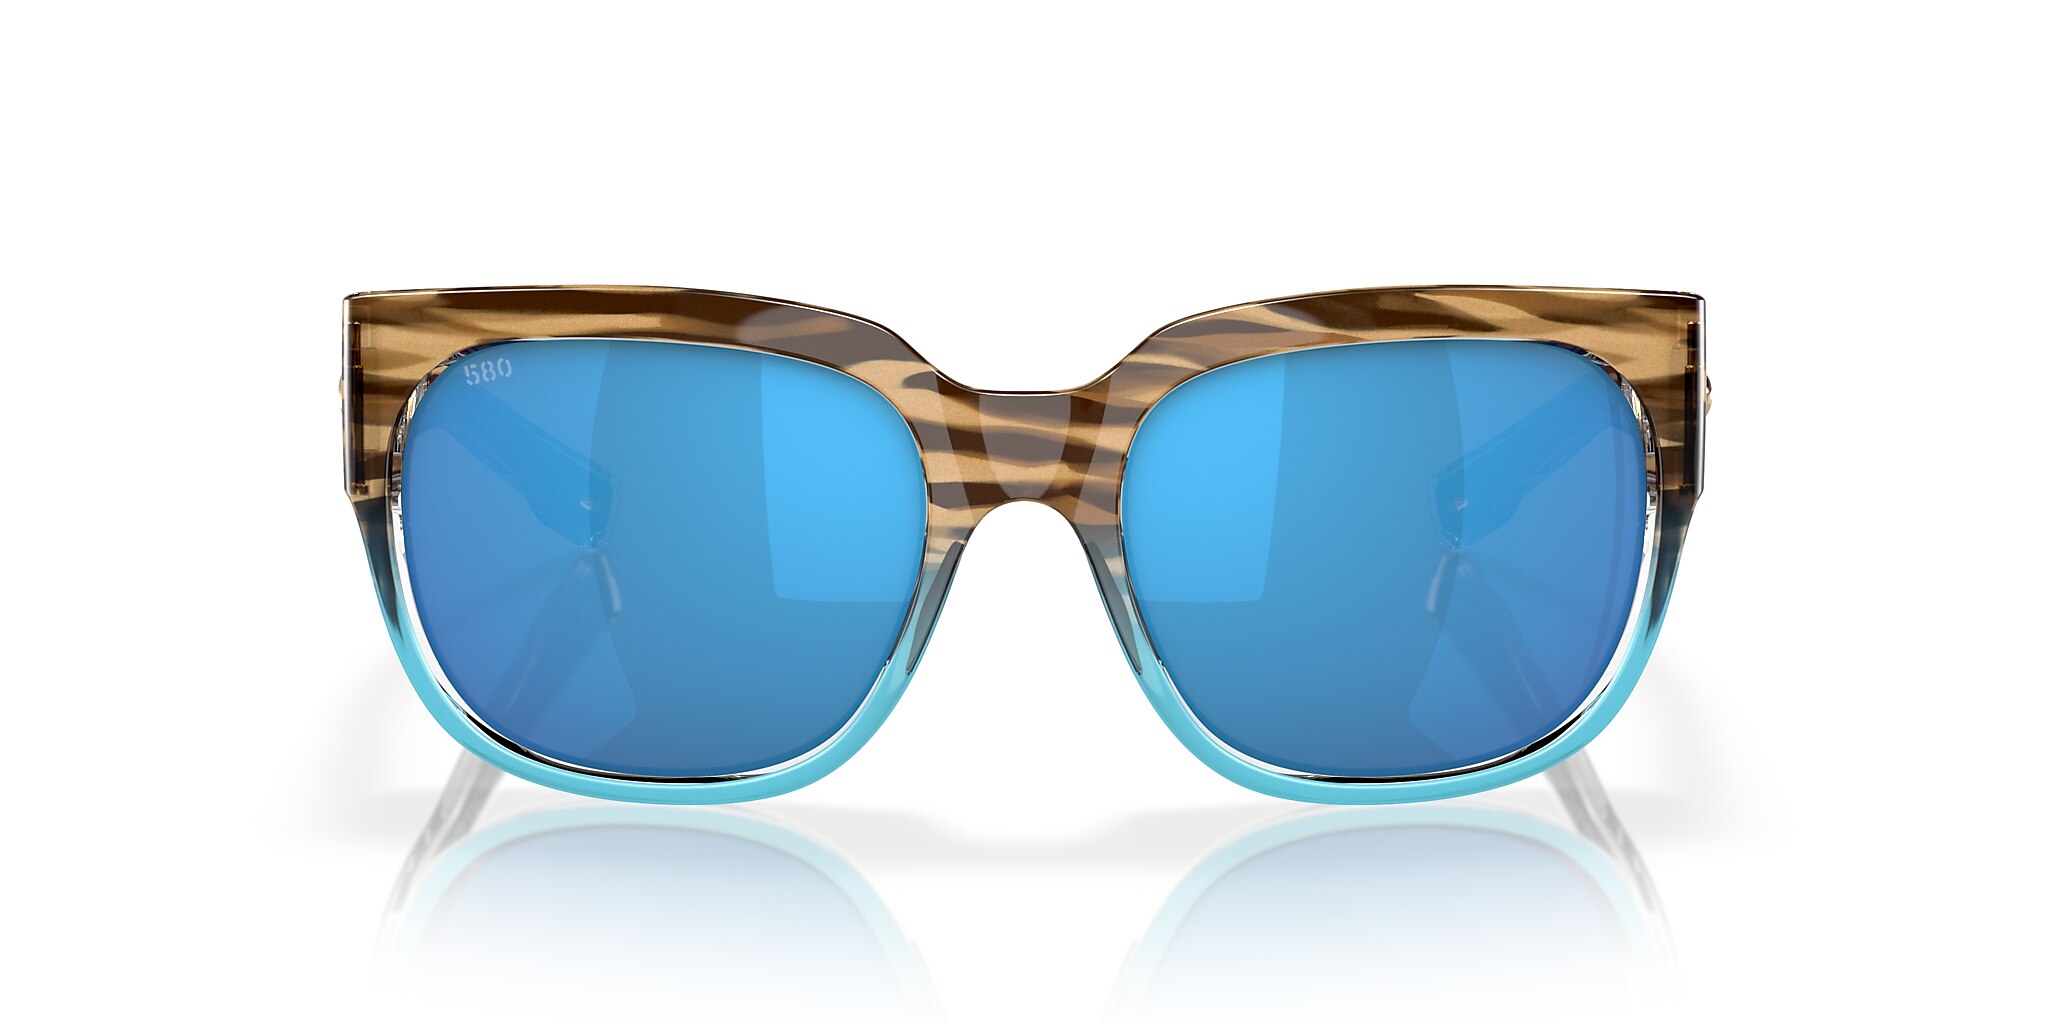 Waterwoman Polarized Sunglasses in Blue Mirror | Costa Del Mar®